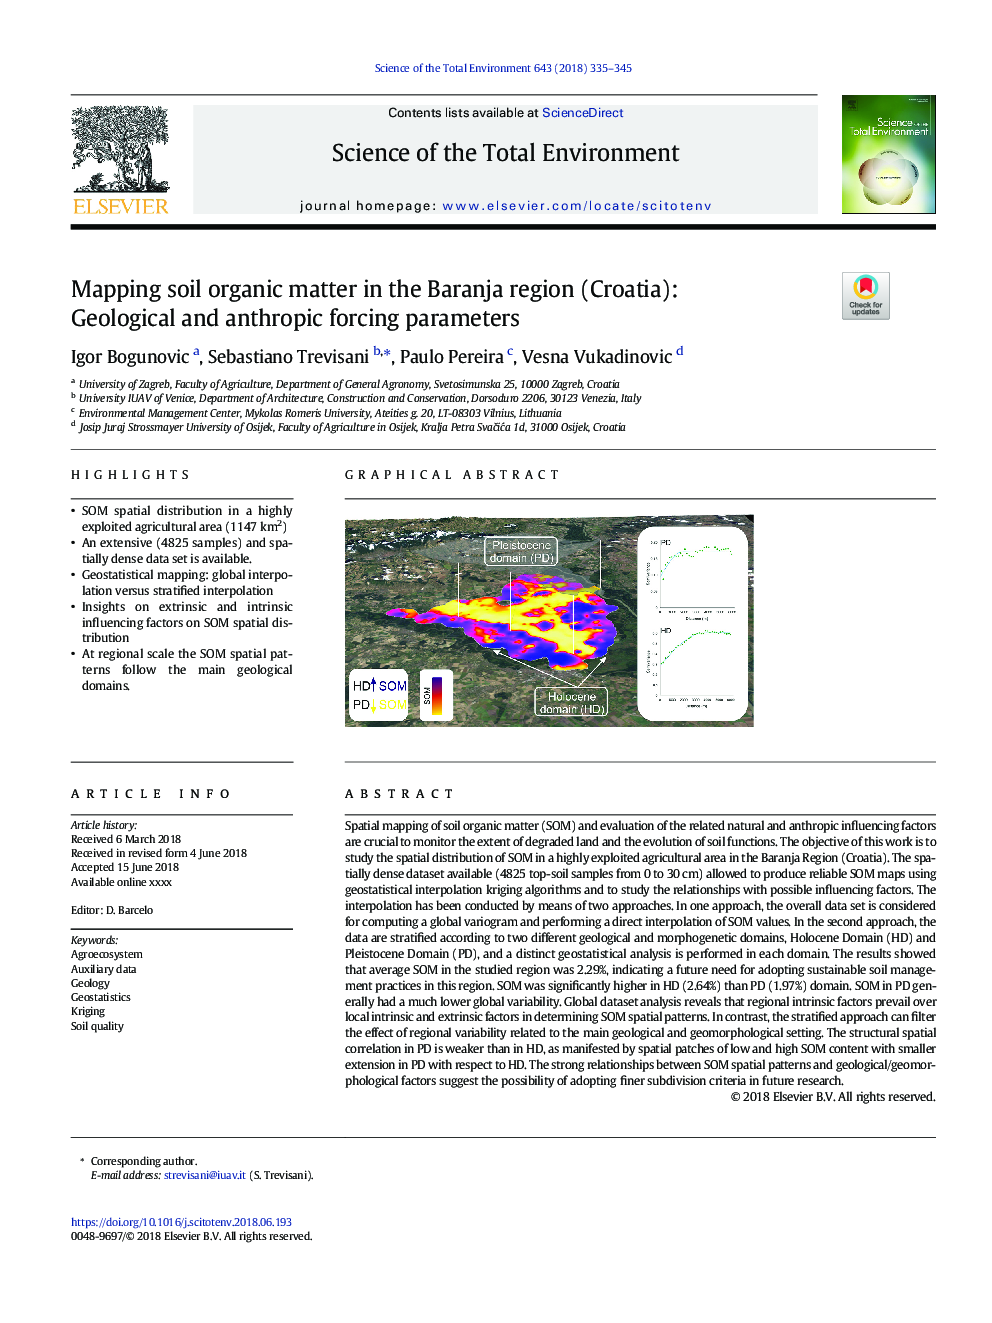 نقشه برداری مواد آلی خاک در منطقه برنجا (کرواسی): پارامترهای جبری زمین شناسی و انفجاری 